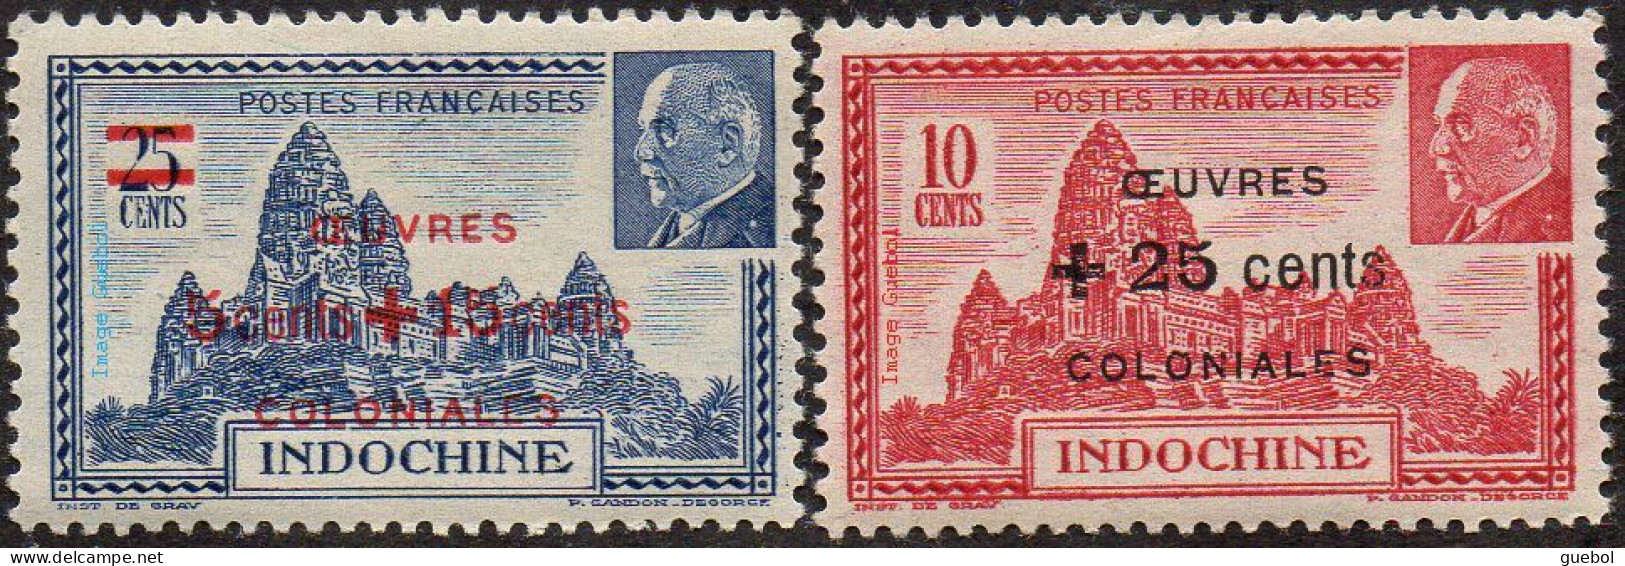 Détail De La Série Maréchal Pétain * Indochine N° 294 Et 295 Temple D'Angkor - 1941 Série Maréchal Pétain